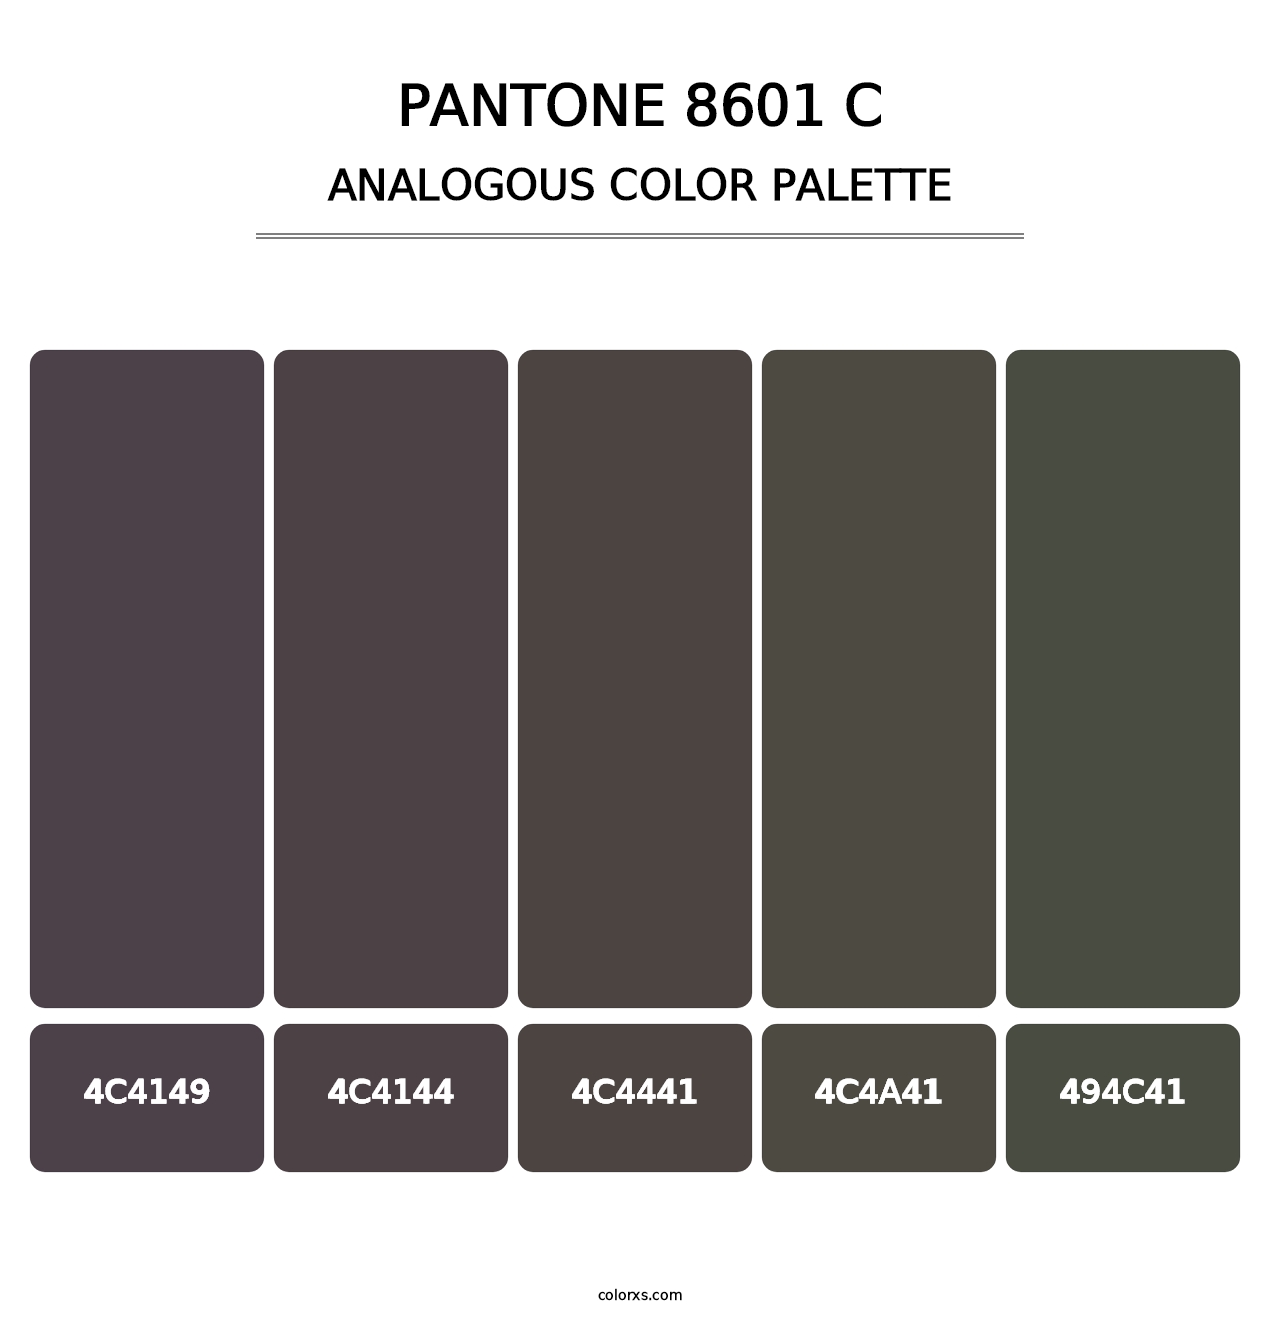 PANTONE 8601 C - Analogous Color Palette